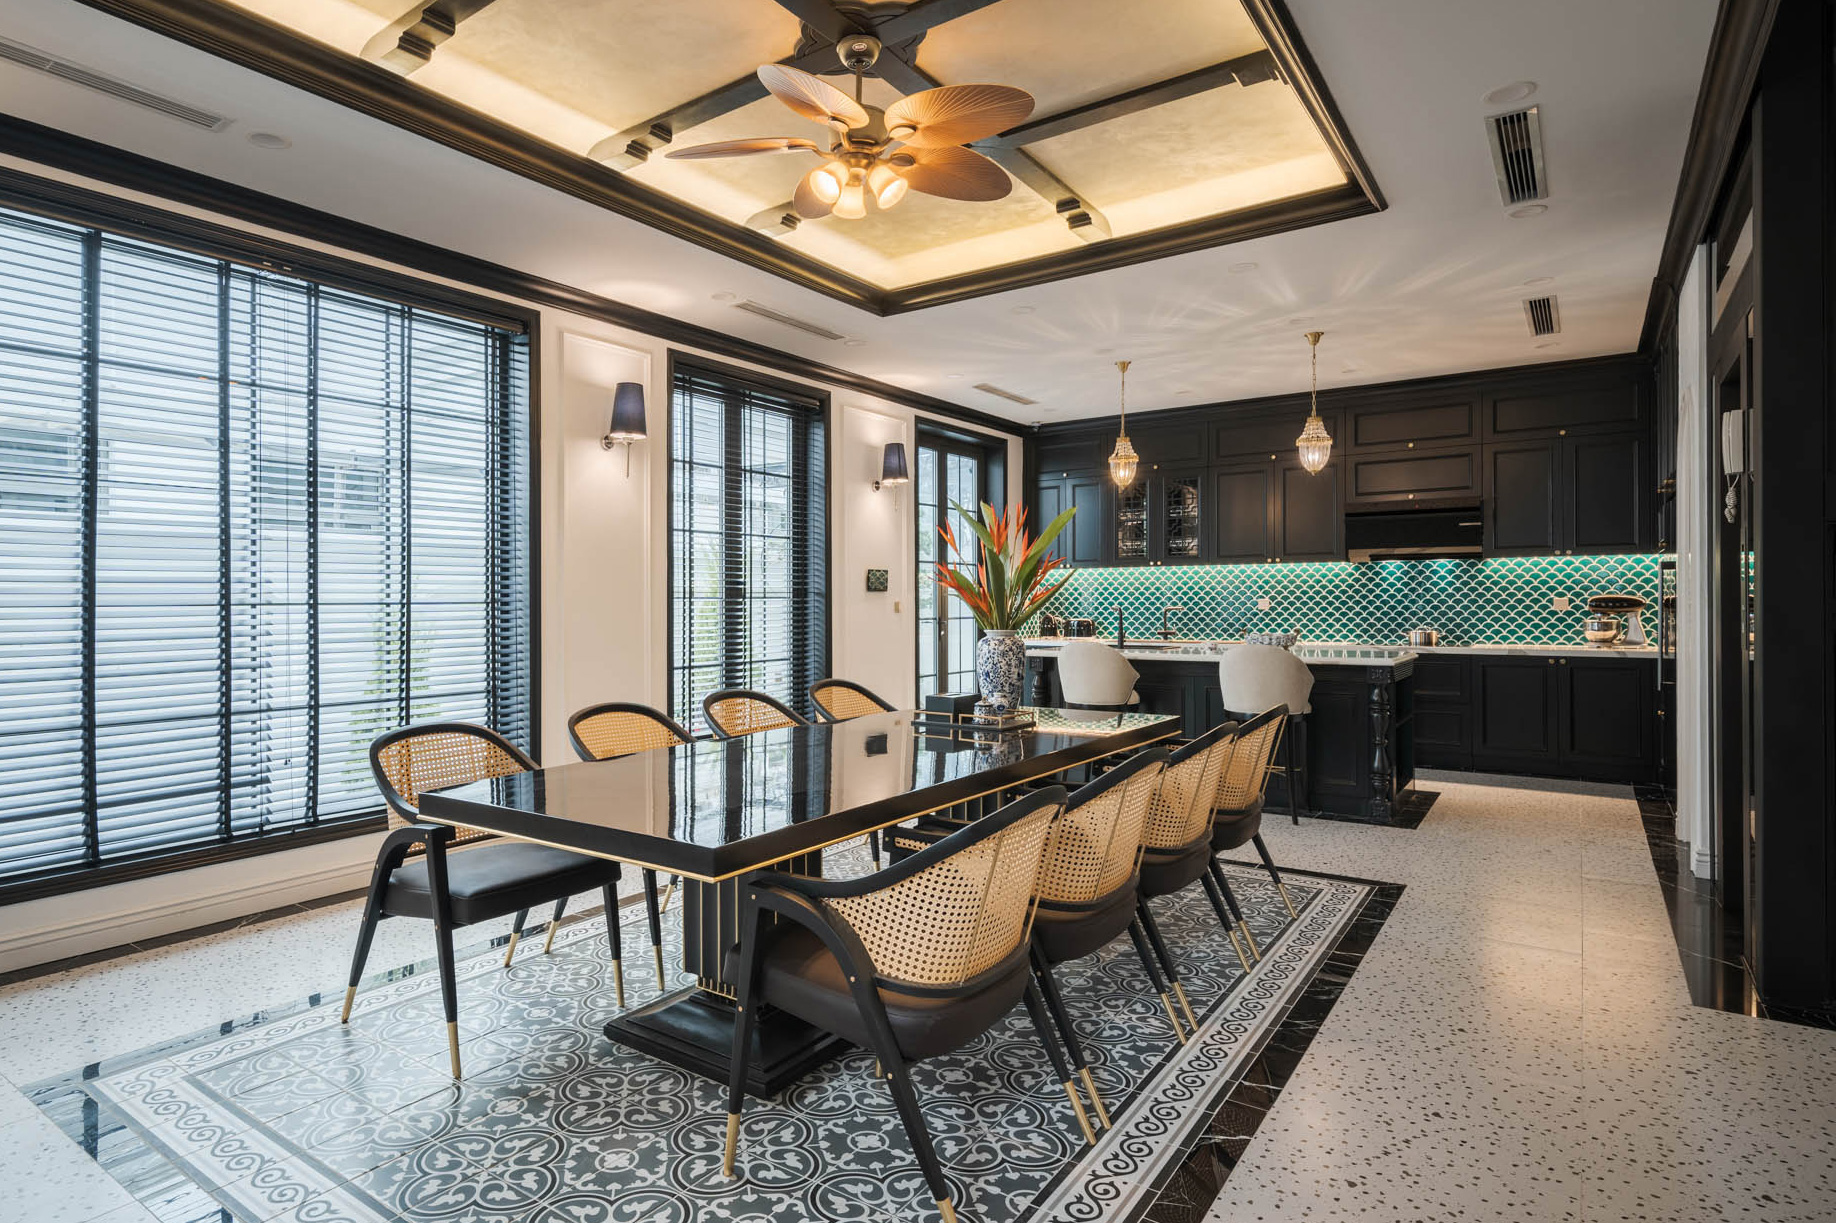 Không gian bếp mang phong cách indochine với gạch mosaic vảy cá xanh lục bảo